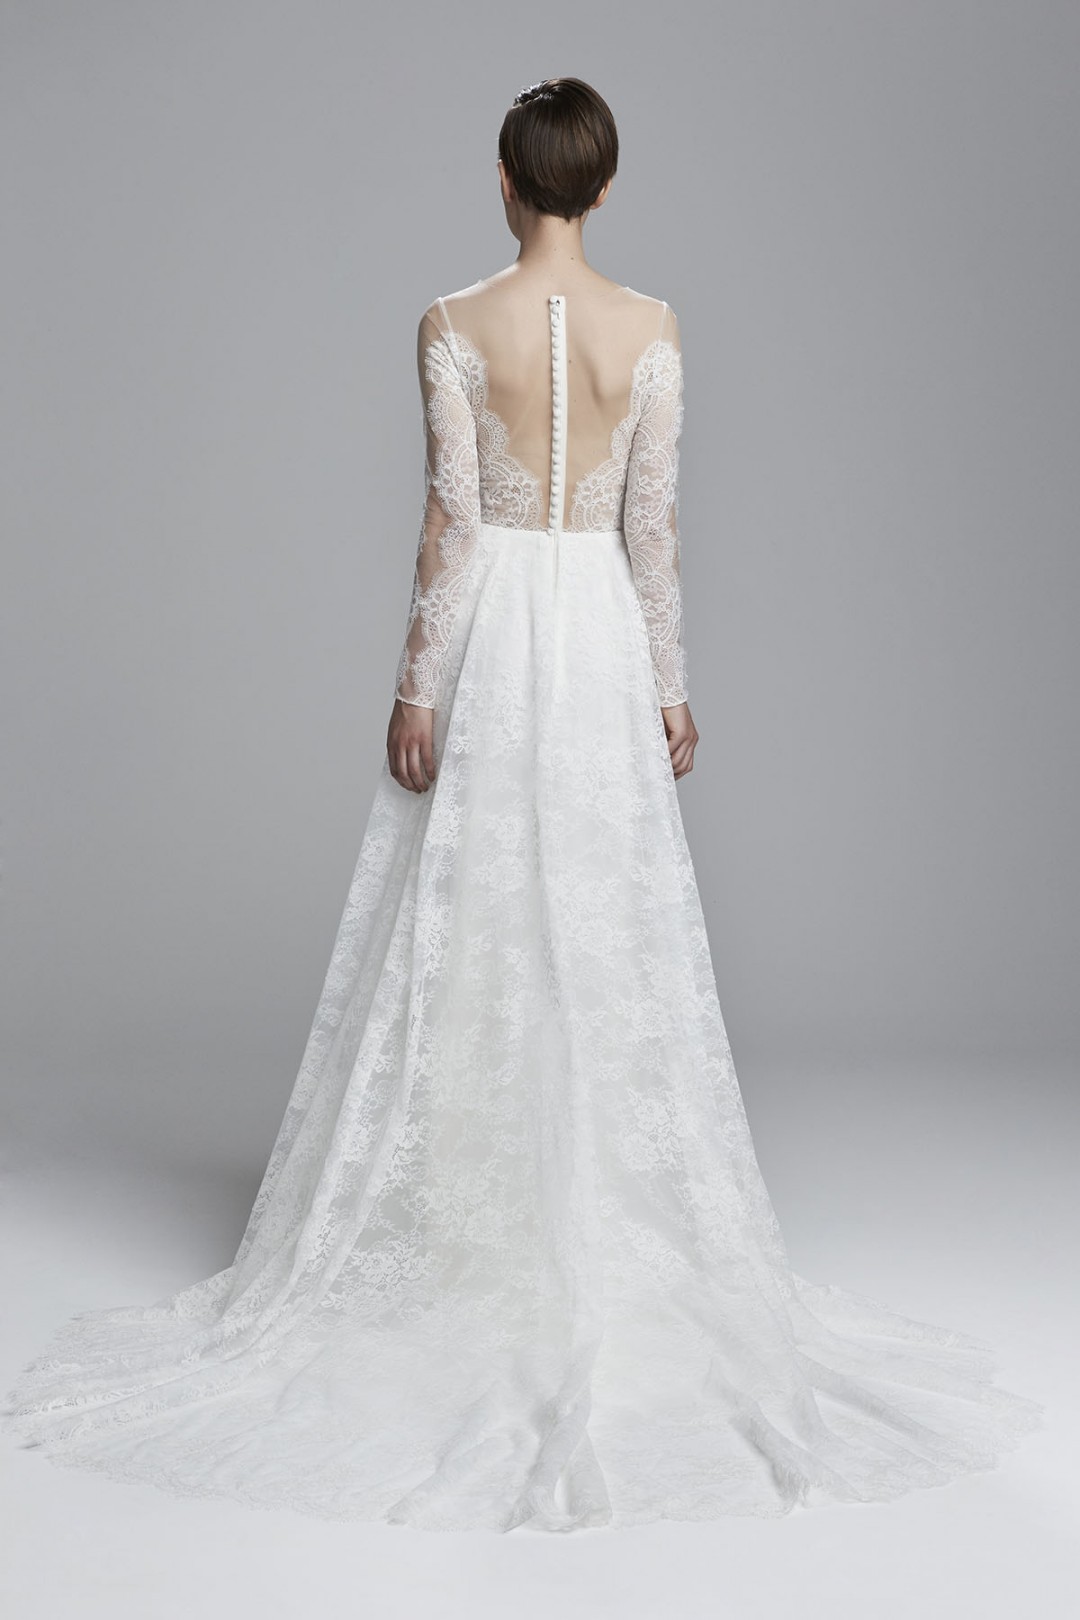 Romantic lace halter deep v neck wedding dress with embellished sash